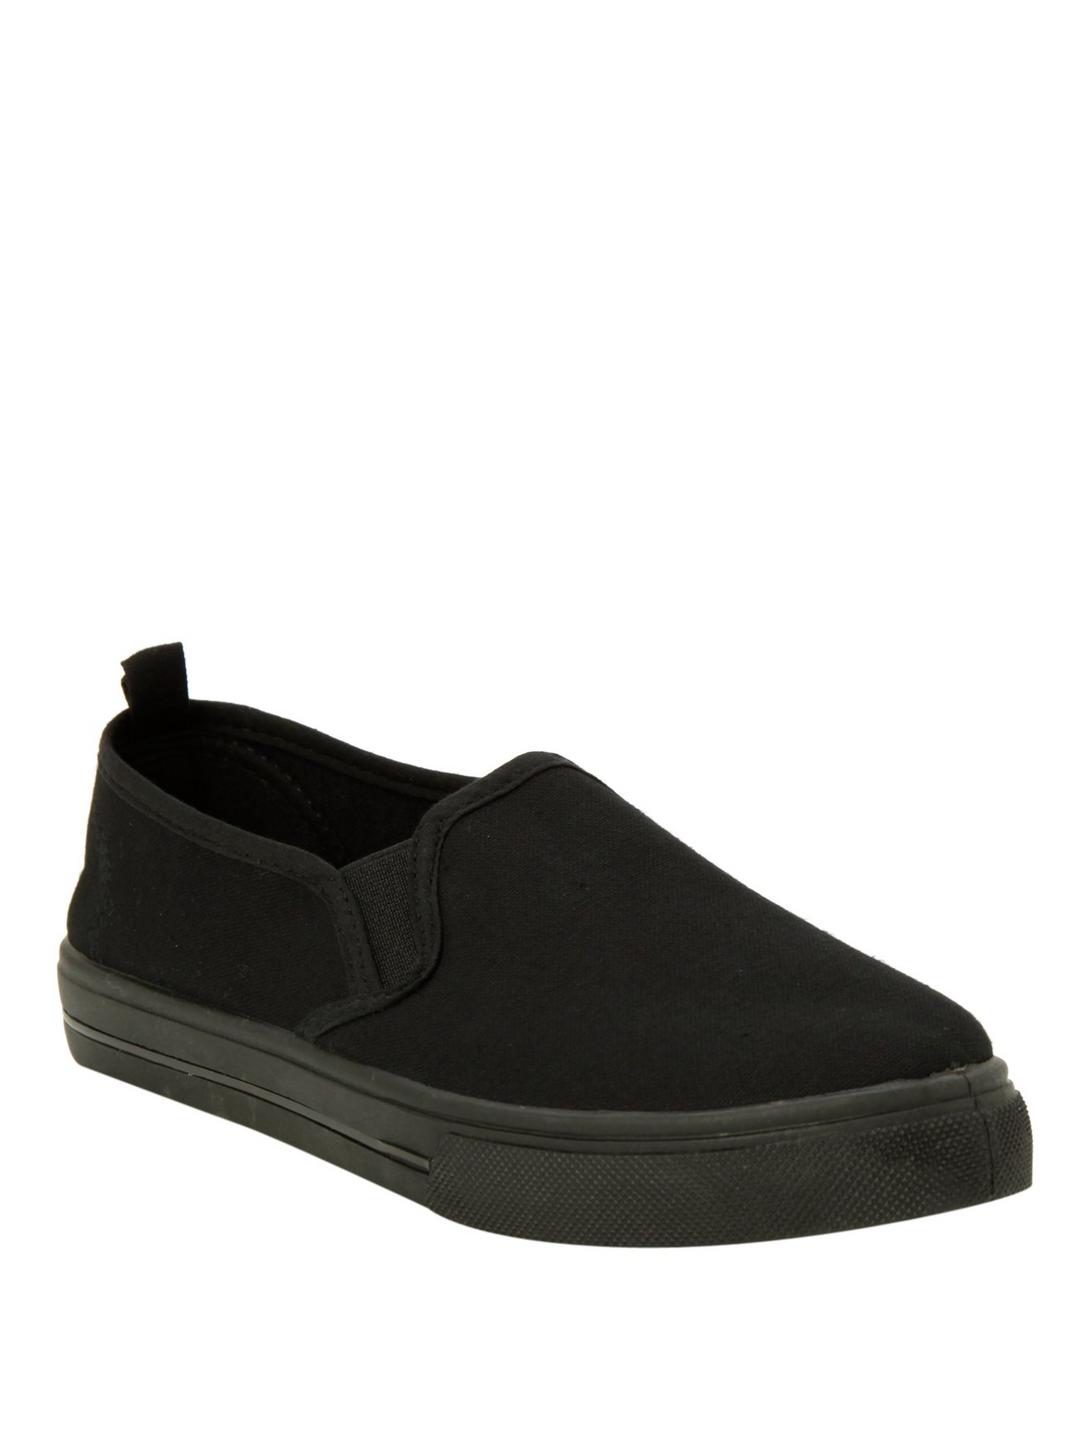 Solid Black Slip-On Shoes, BLACK, hi-res